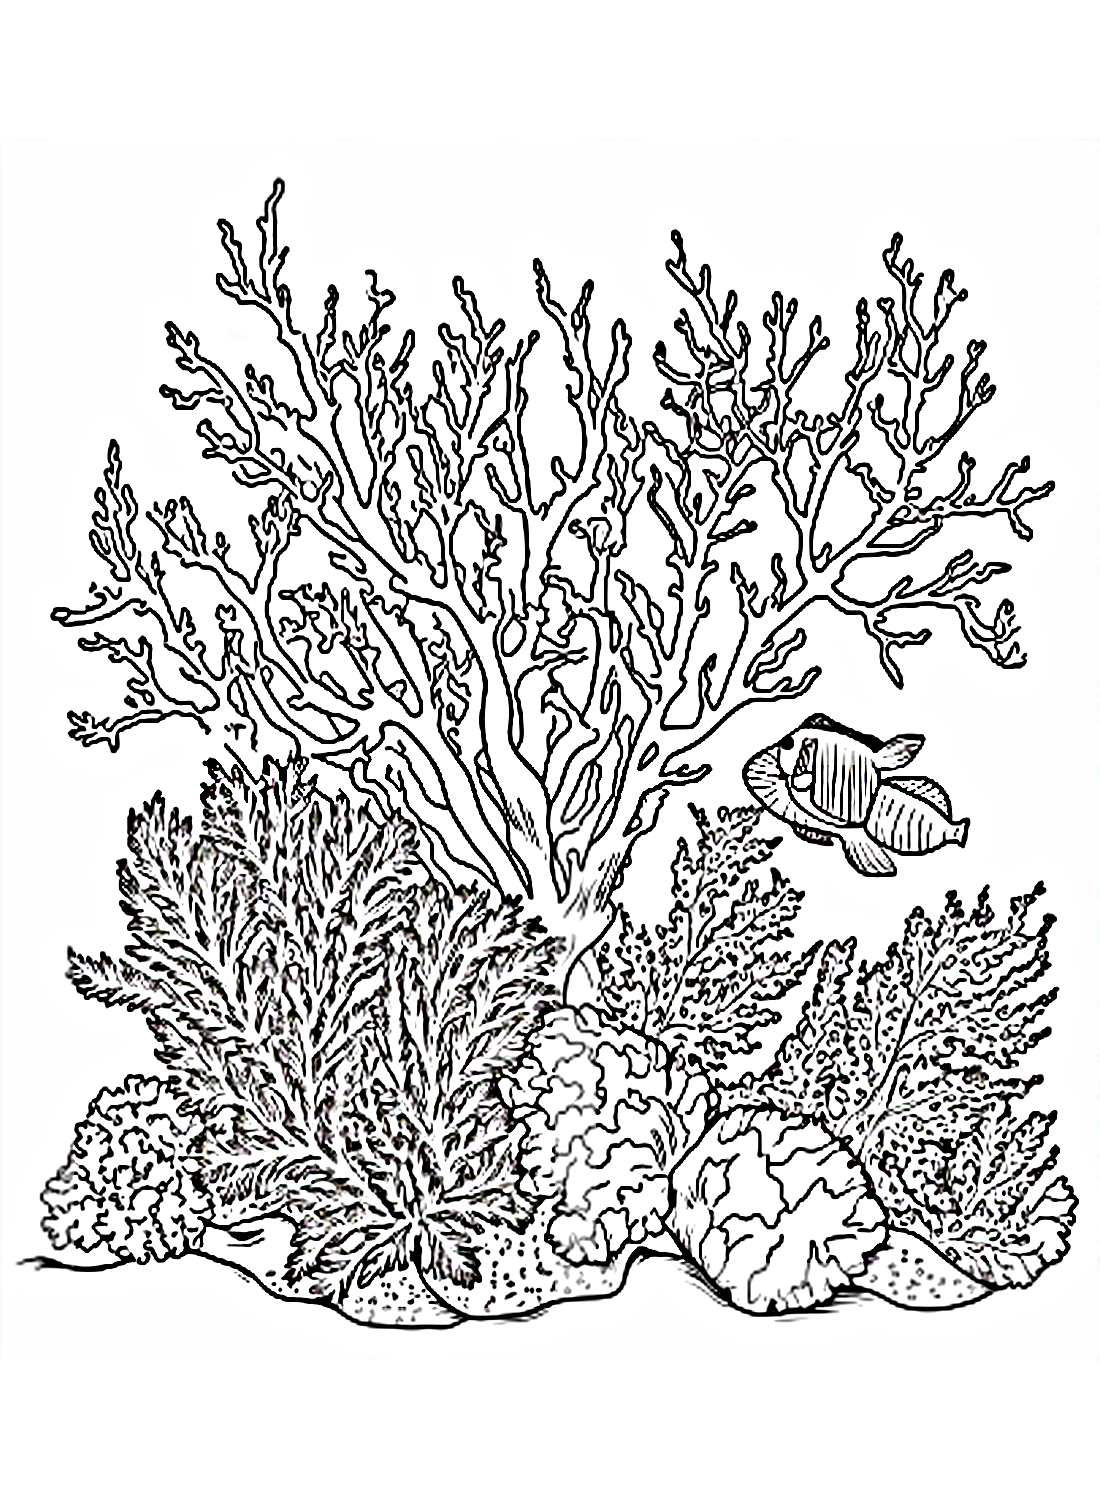 المرجان من المرجان